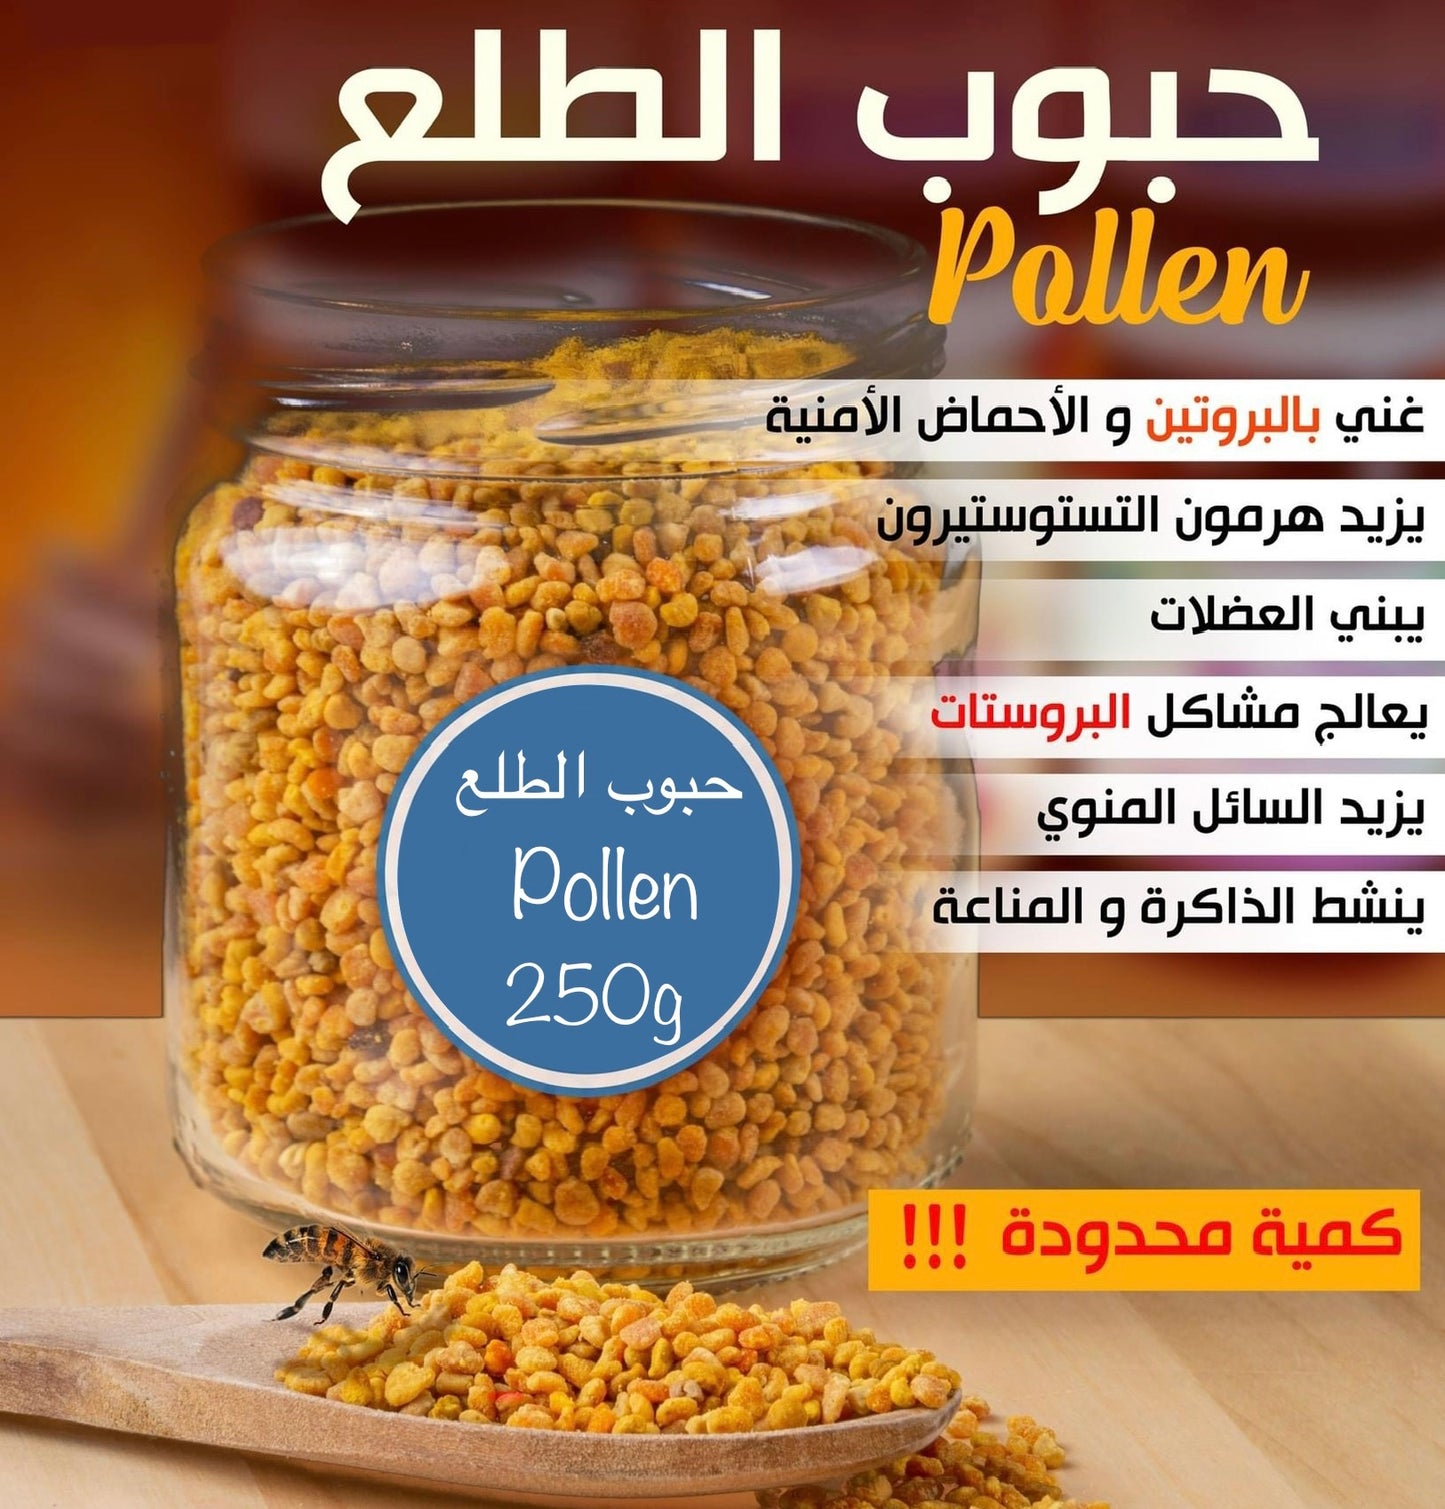 Generic Graines de Pollen d'Abeilles ( حبوب اللقاح ) Probiotique